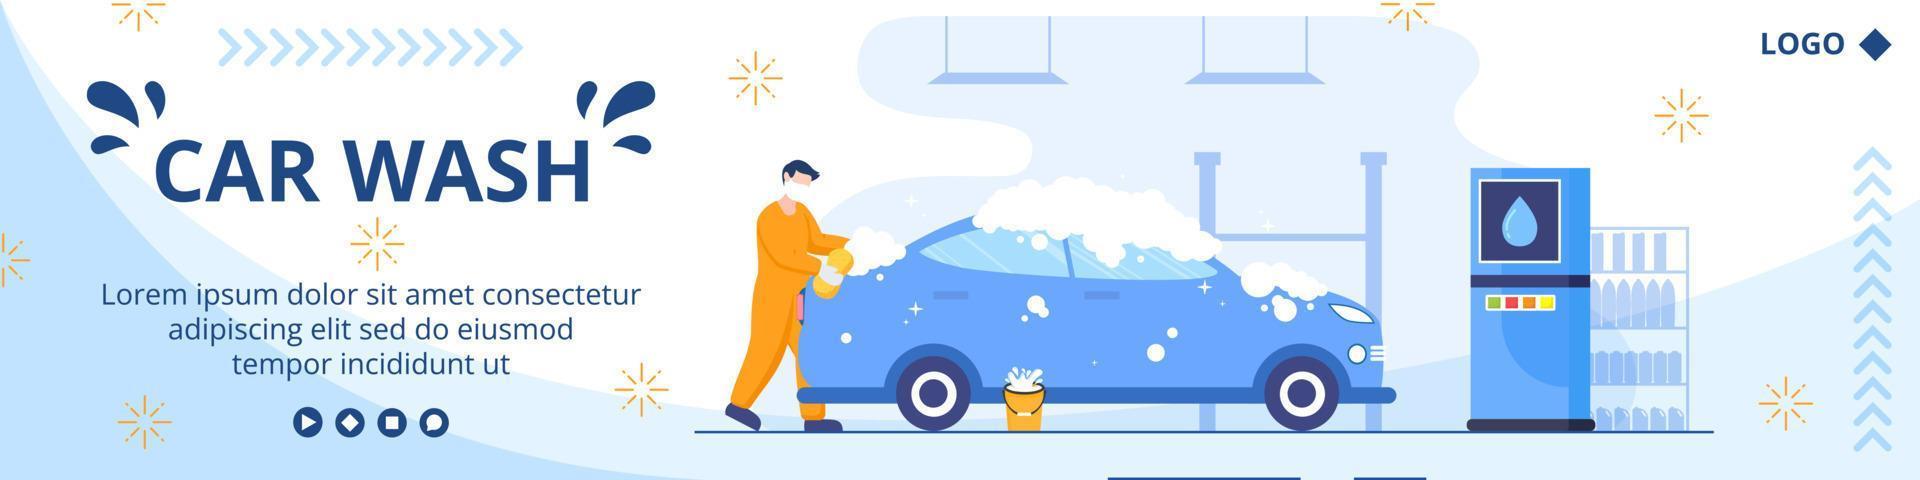 illustrazione di design piatto modello di banner di servizio di lavaggio auto modificabile di sfondo quadrato adatto per social media o annunci web su Internet vettore